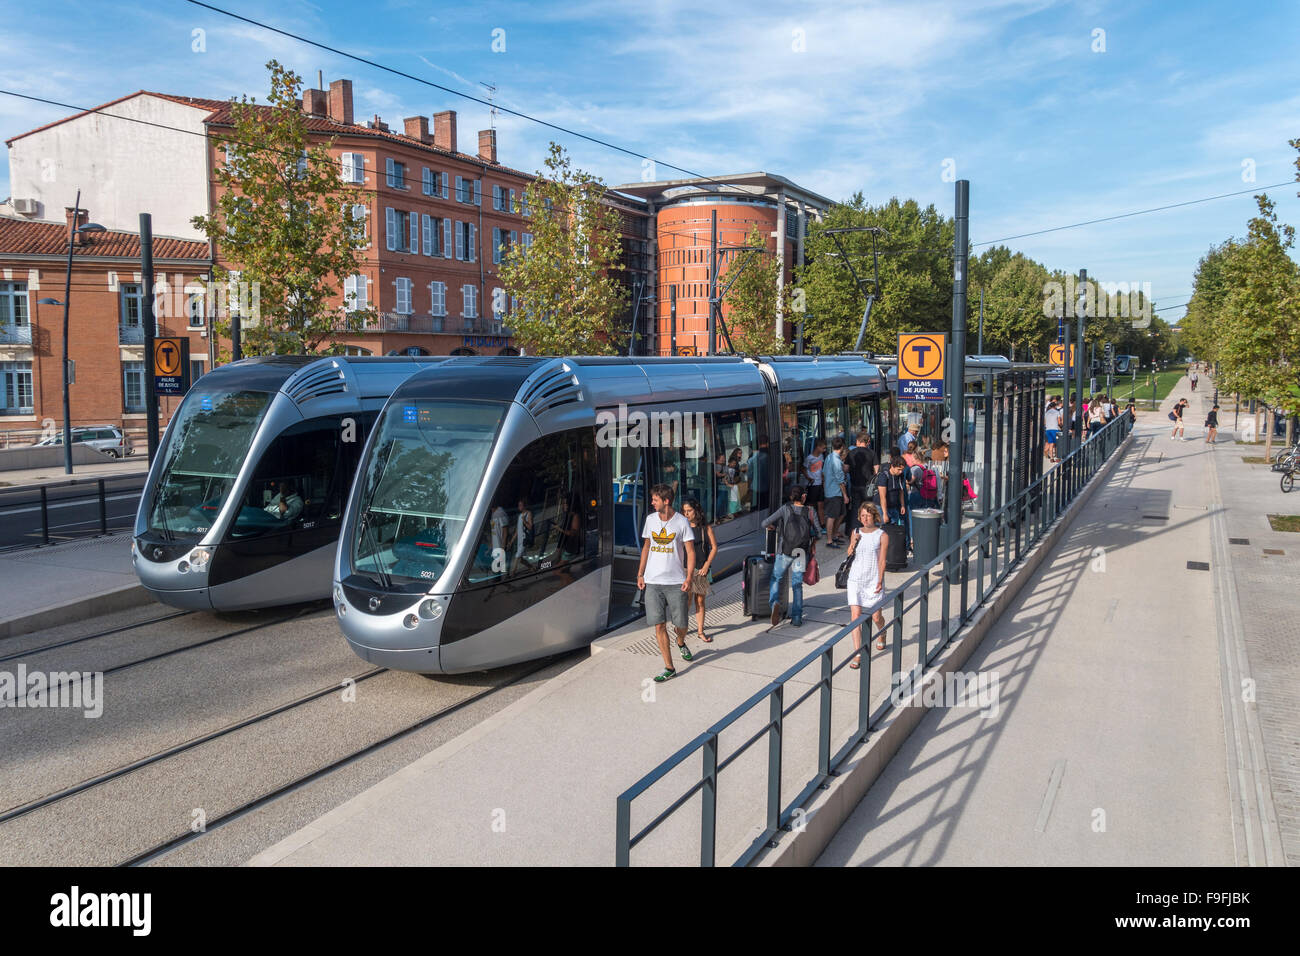 Zwei moderne Straßenbahnen Palais de Justice Tram halten in Toulouse Frankreich. Straßenbahnlinie vom Stadtzentrum zum Flughafen Toulouse-Blagnac. Stockfoto